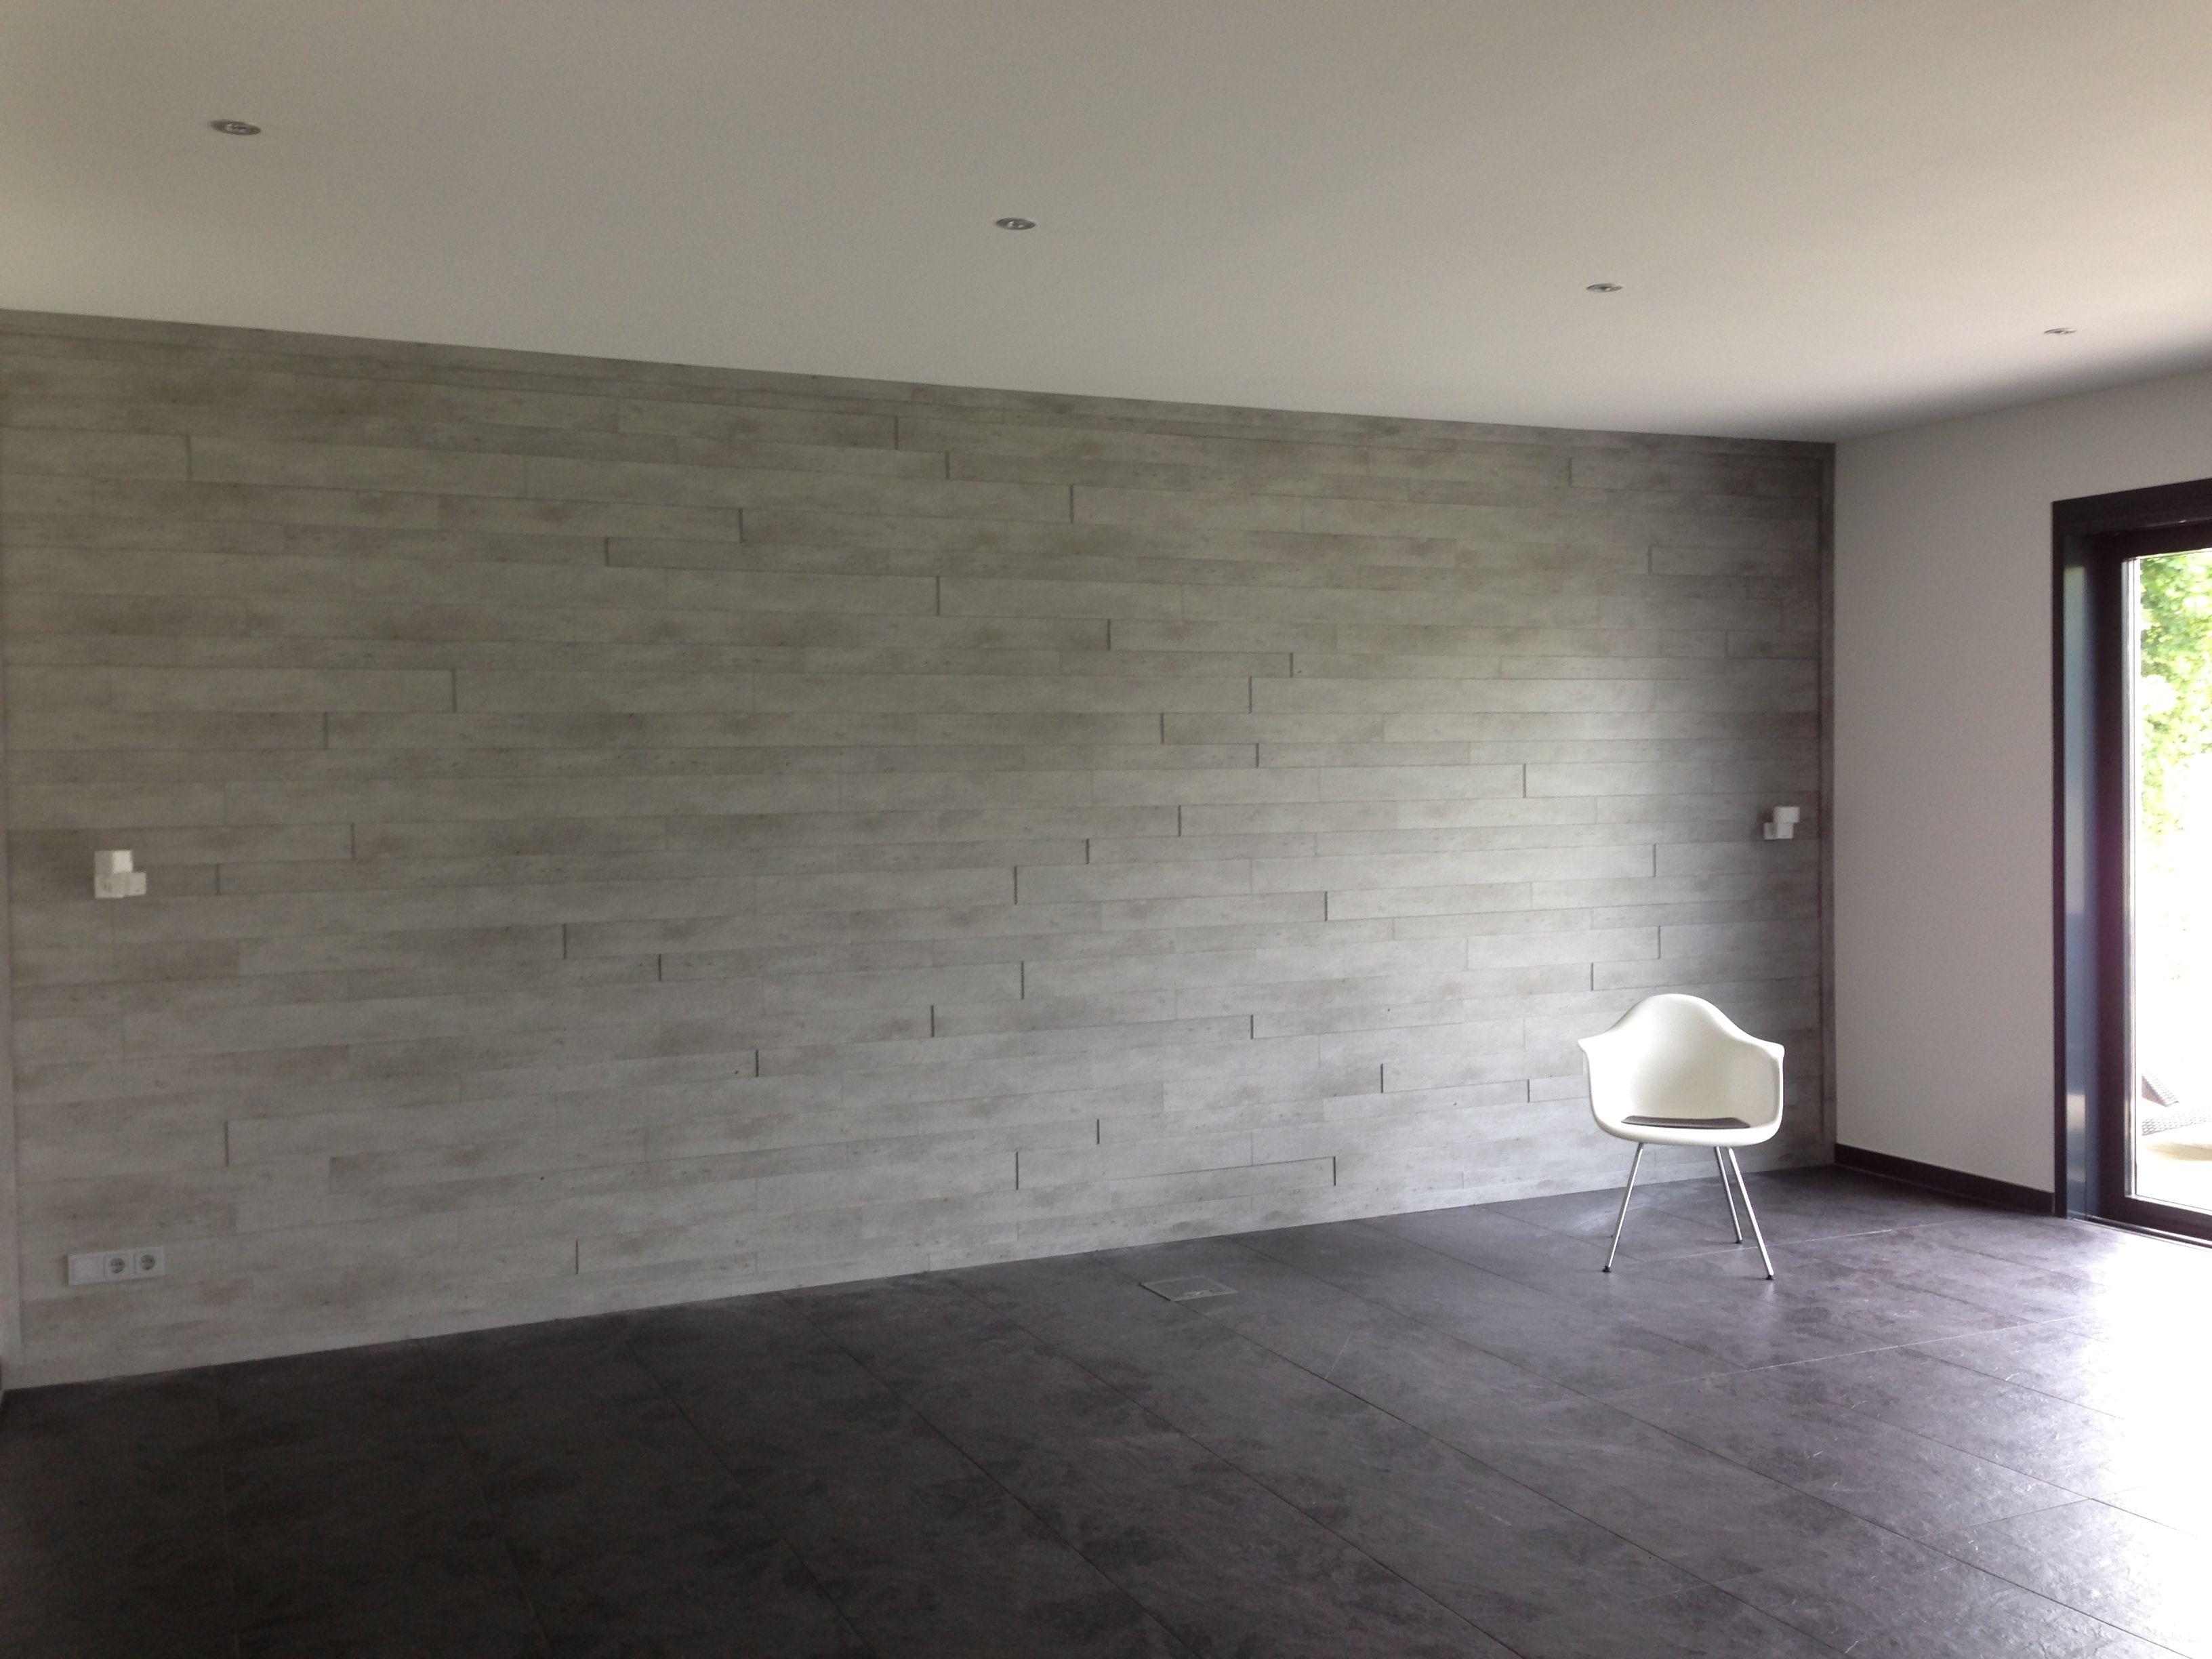 3D Optik Beton Wand #wandgestaltung #wohnzimmerwand ©Einrichtungskontor Uwe Meyer